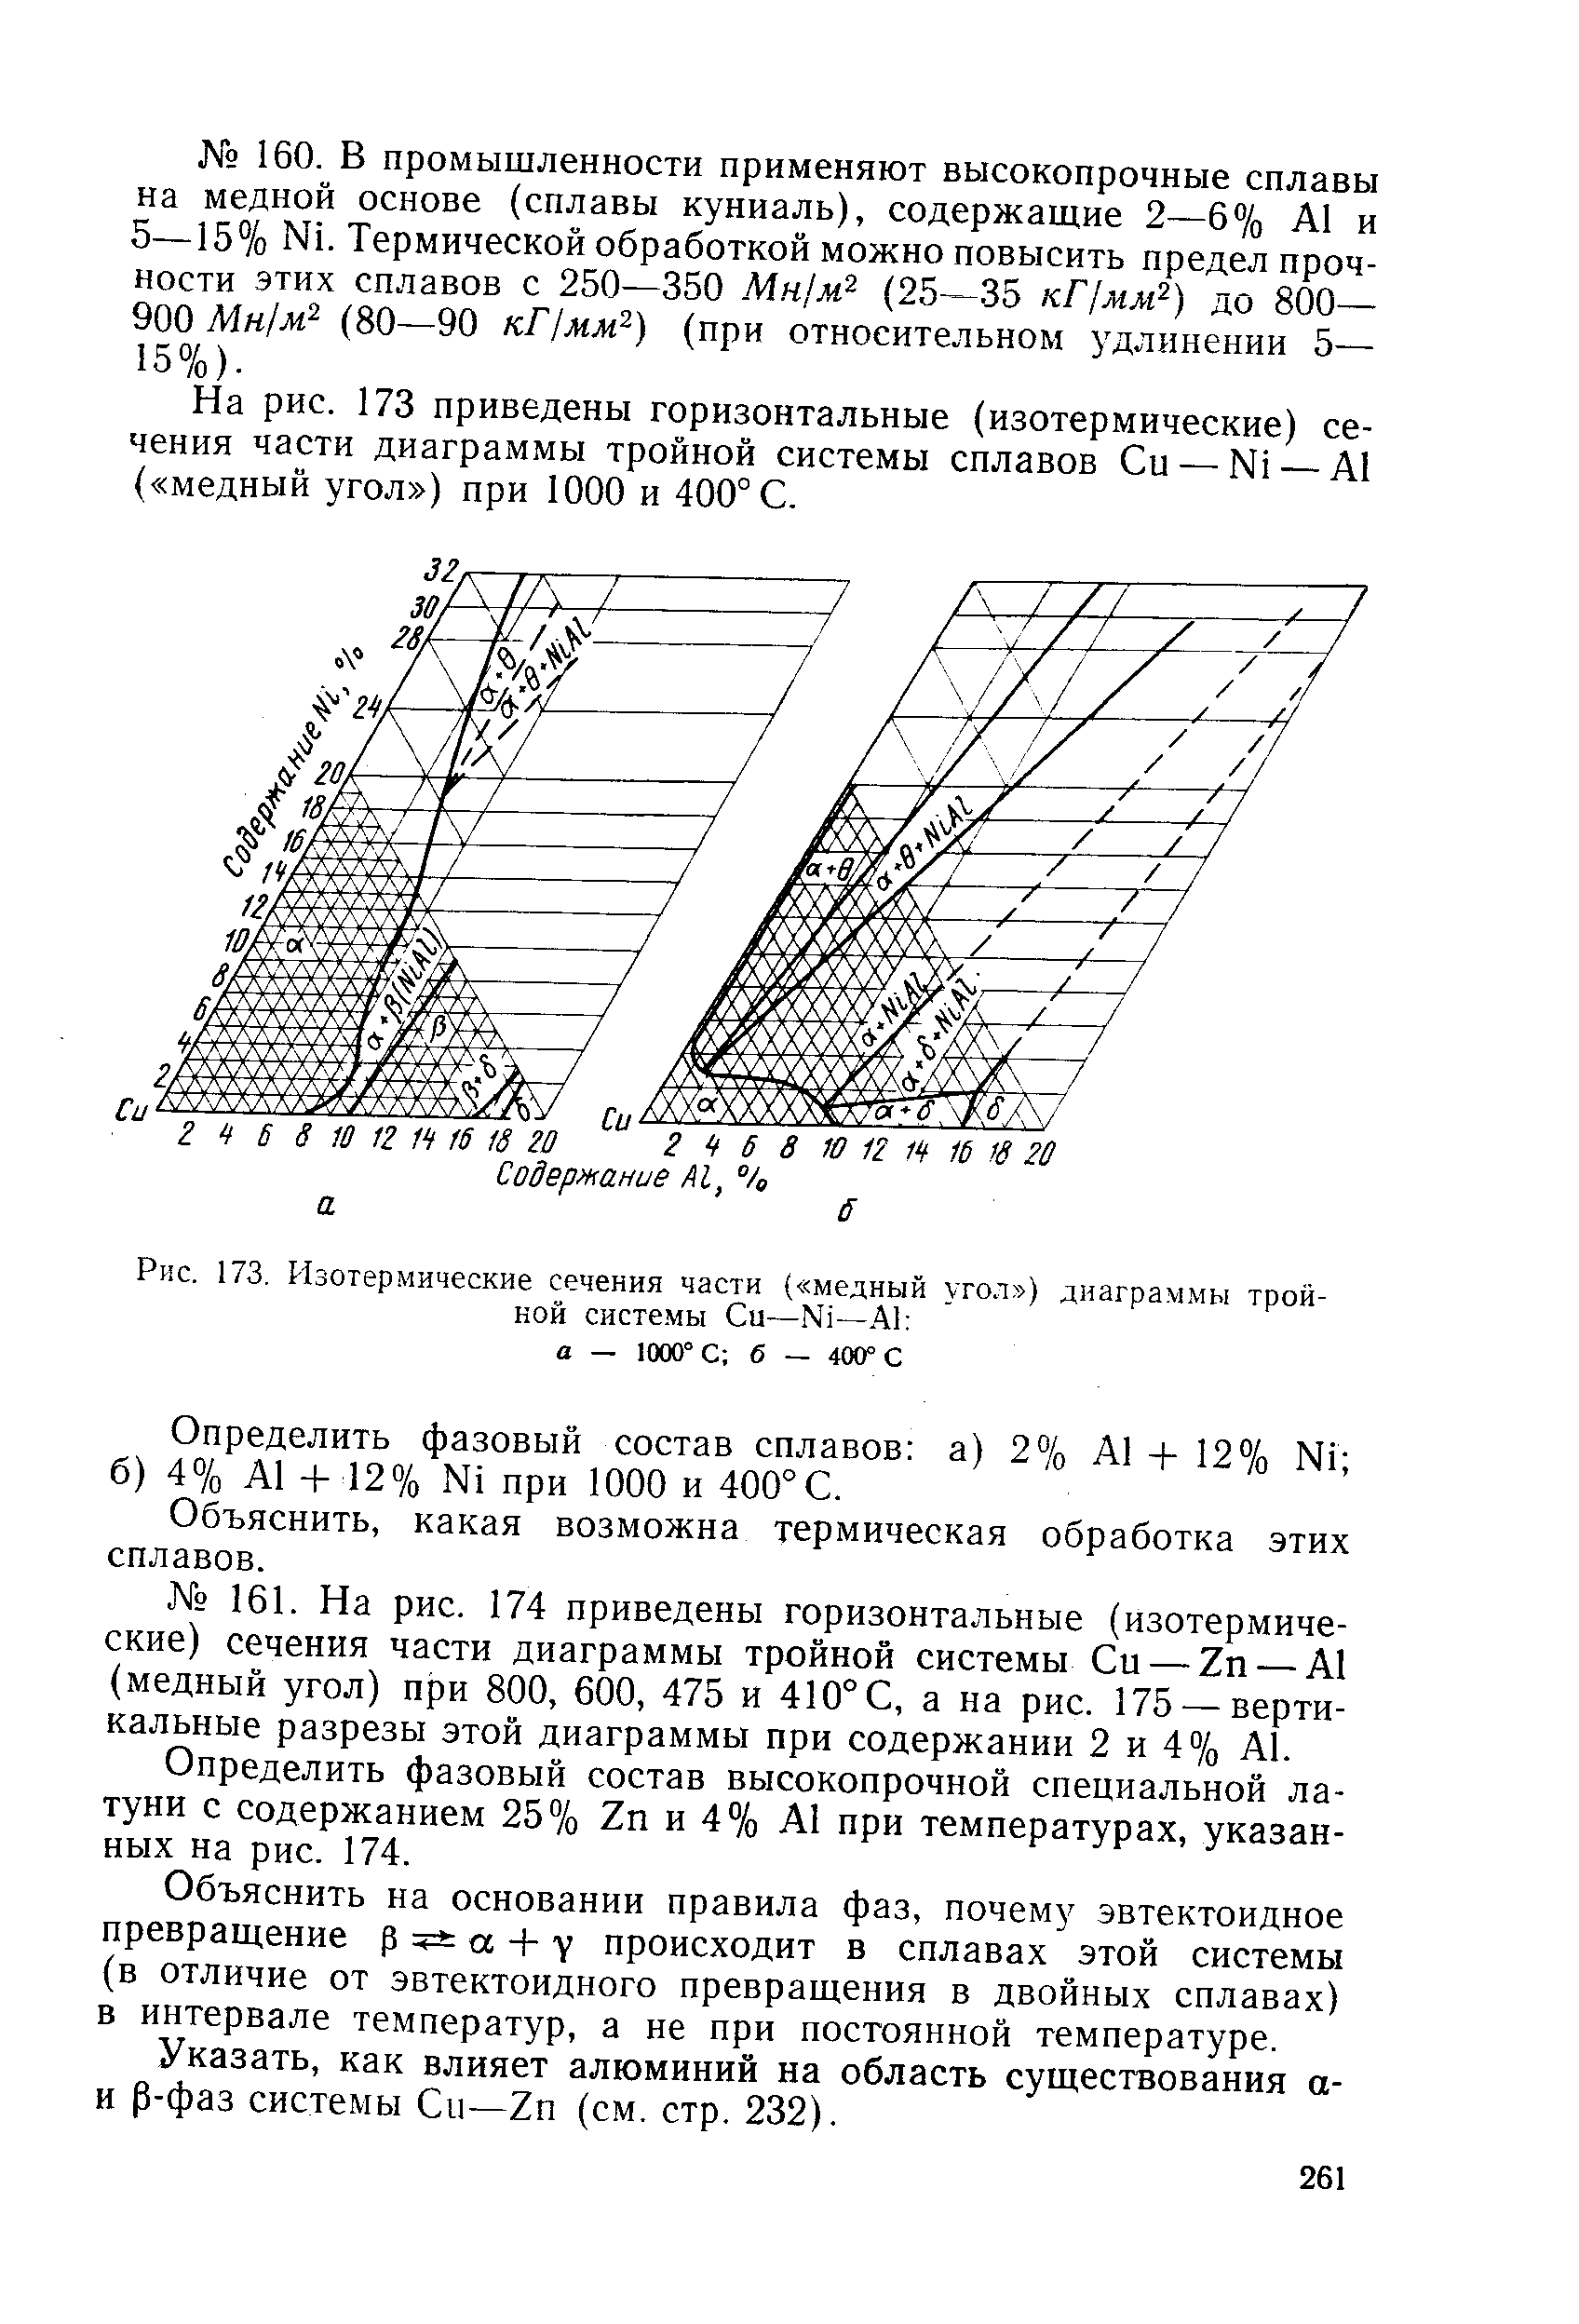 Рис. 173. Изотермические сечения части ( медный уго.т ) диаграммы тройной систе.мы Си—N1—А) а — 1000° С б — 400° С
